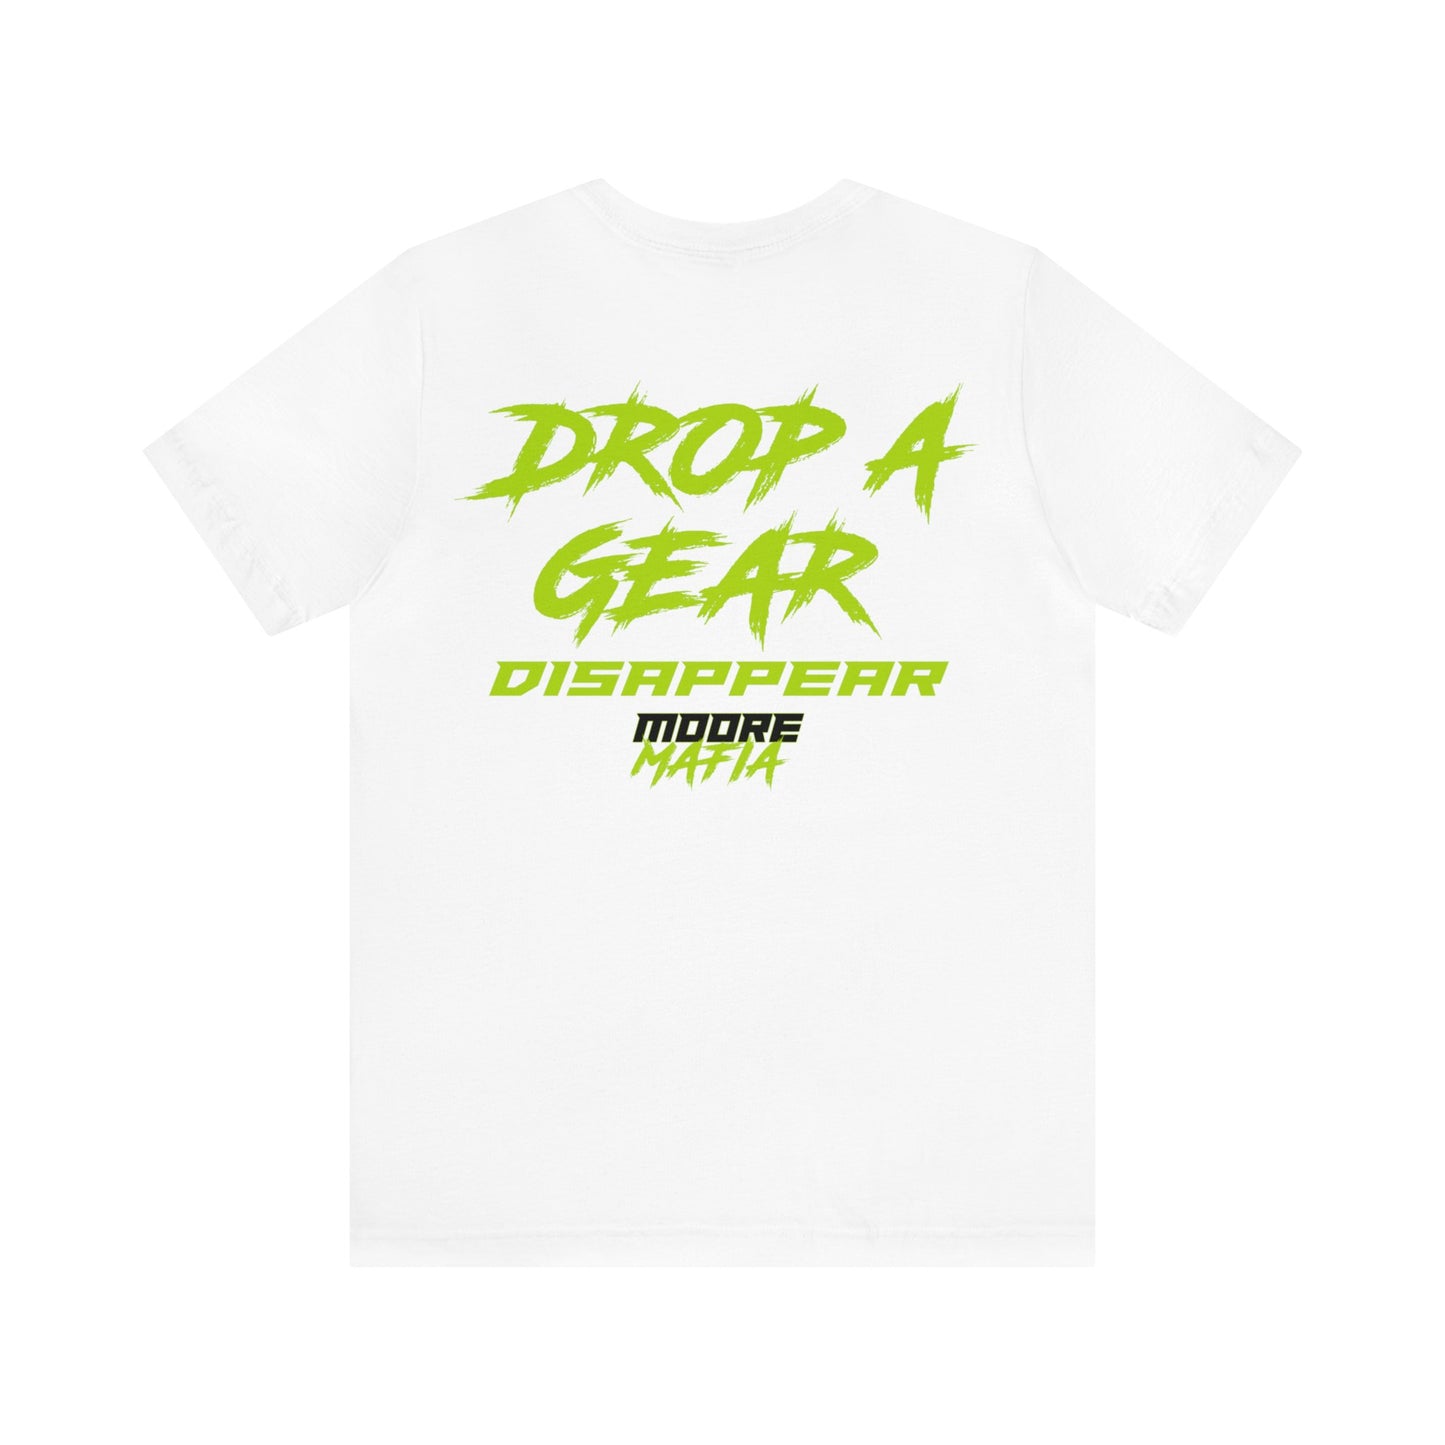 Drop A Gear Disappar Unisex T-Shirt